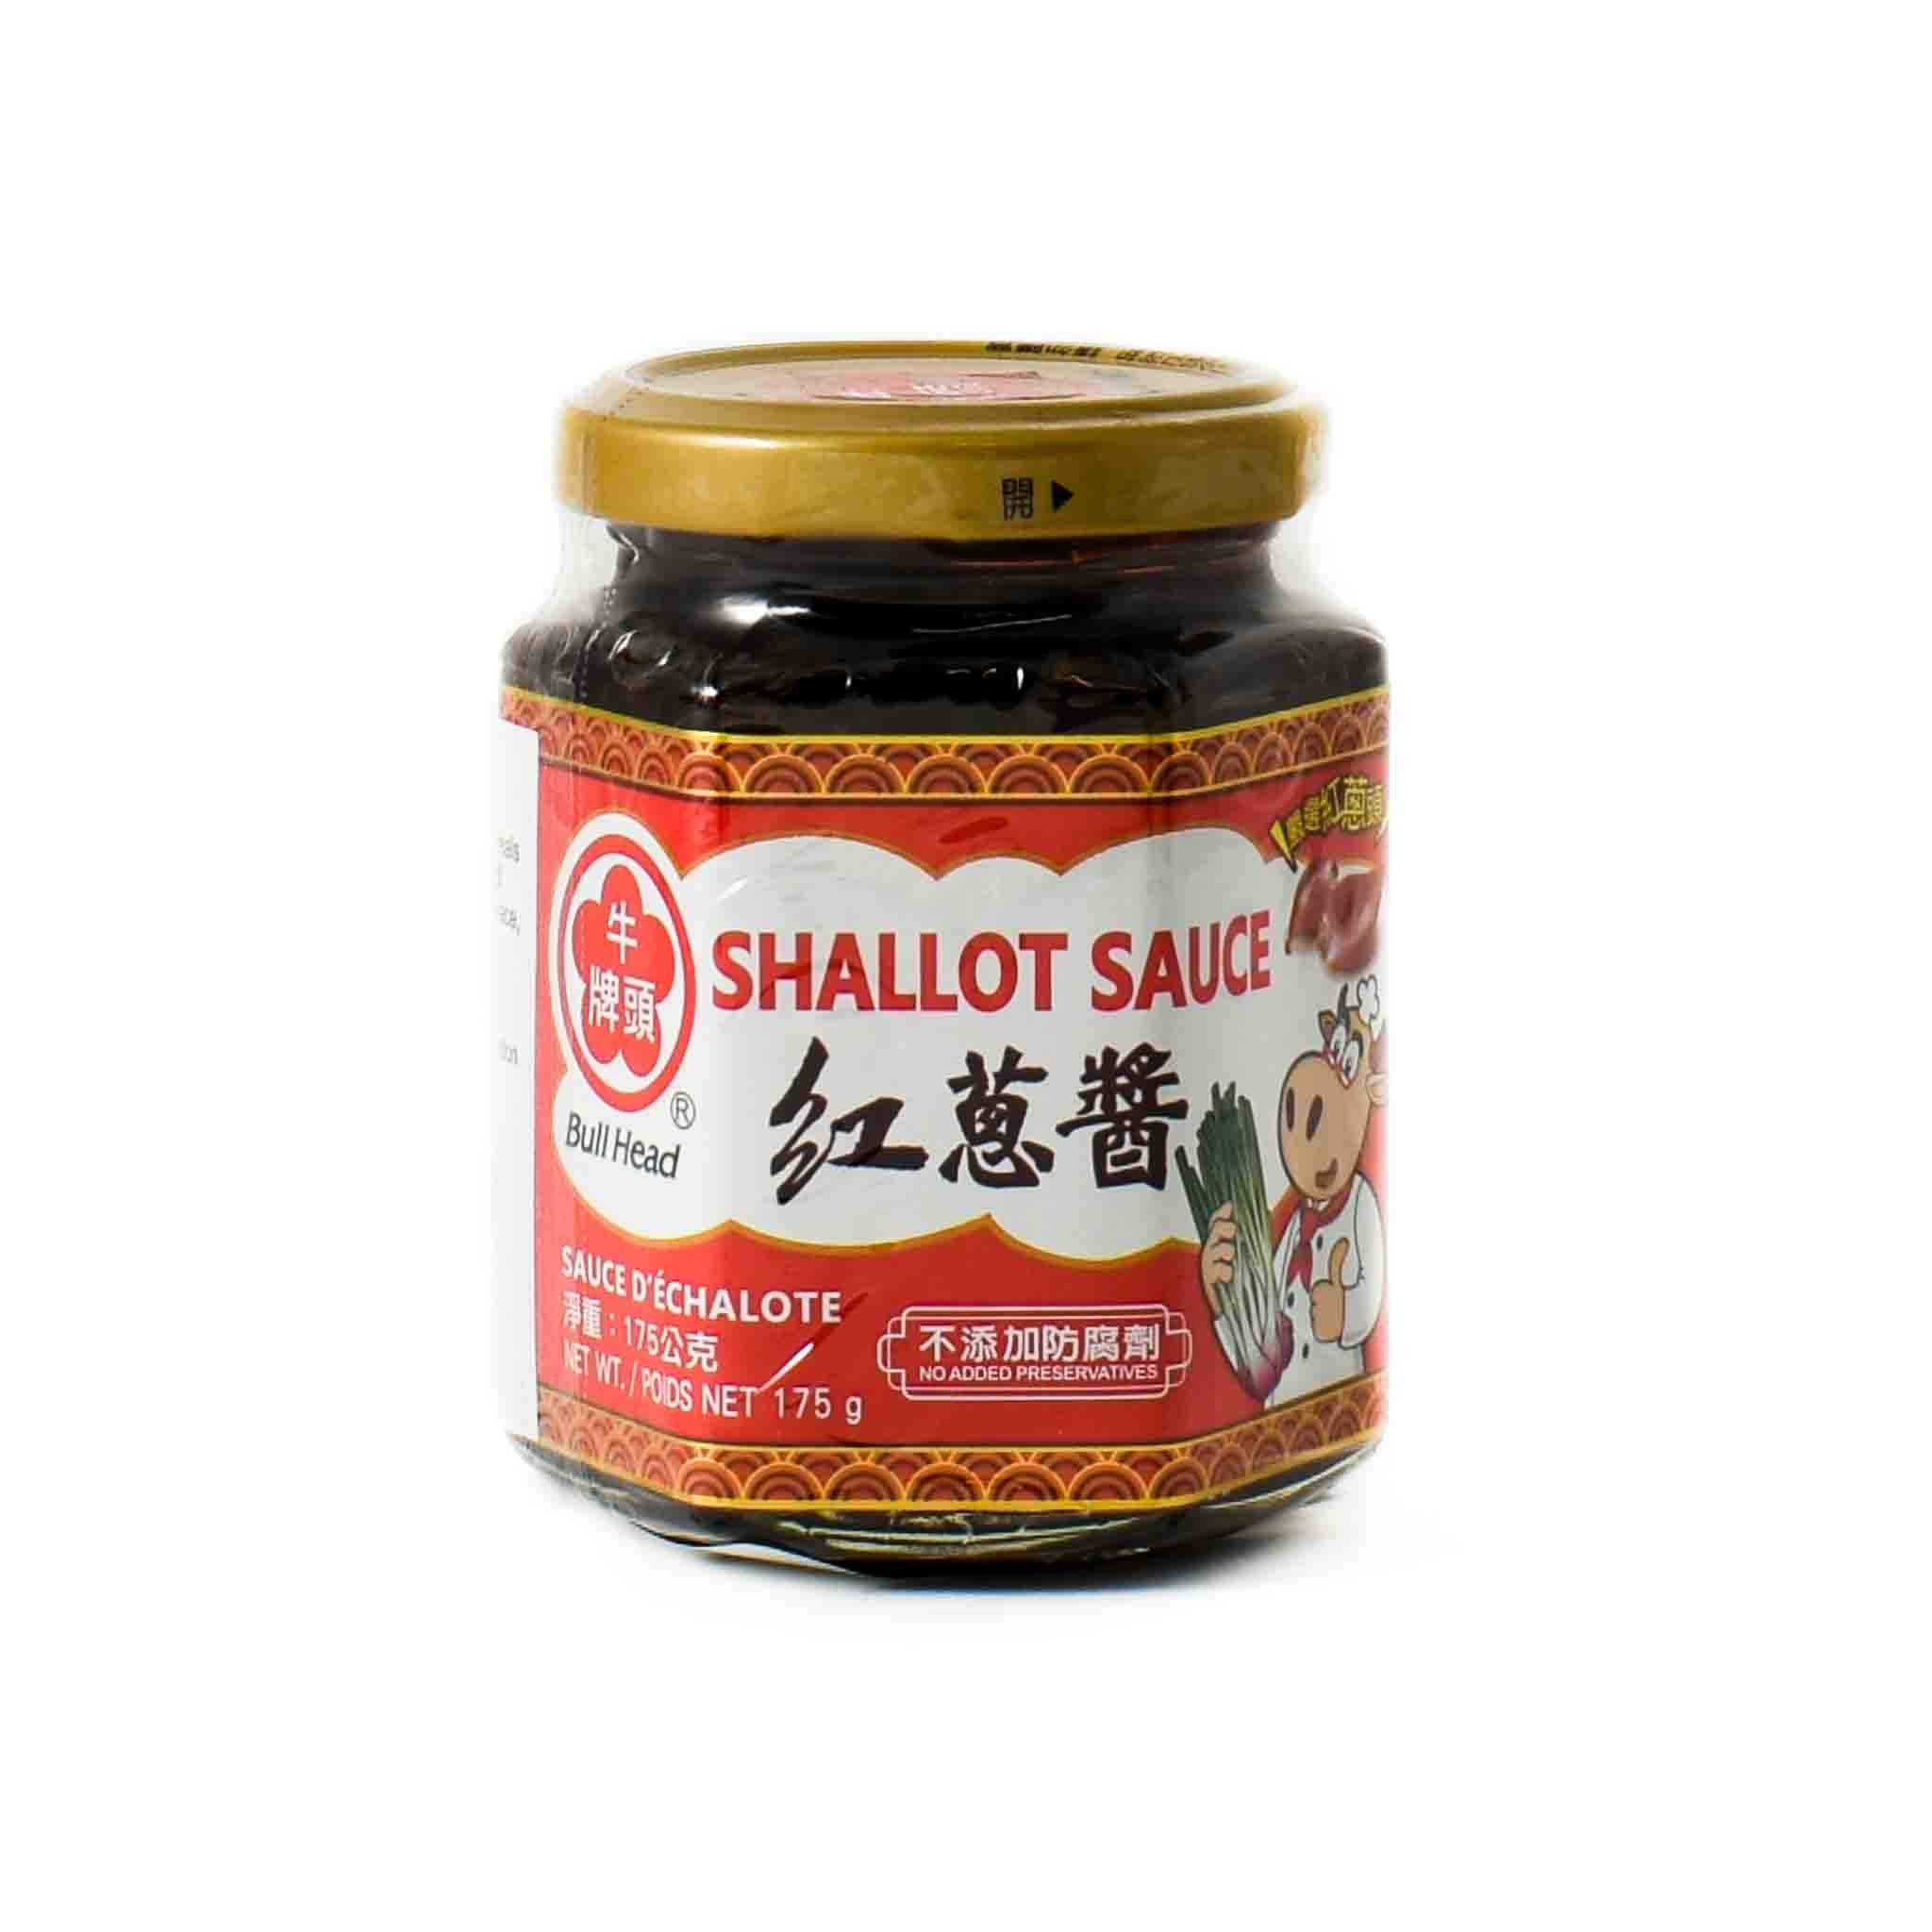 TA0027 Shallot Sauce 175g